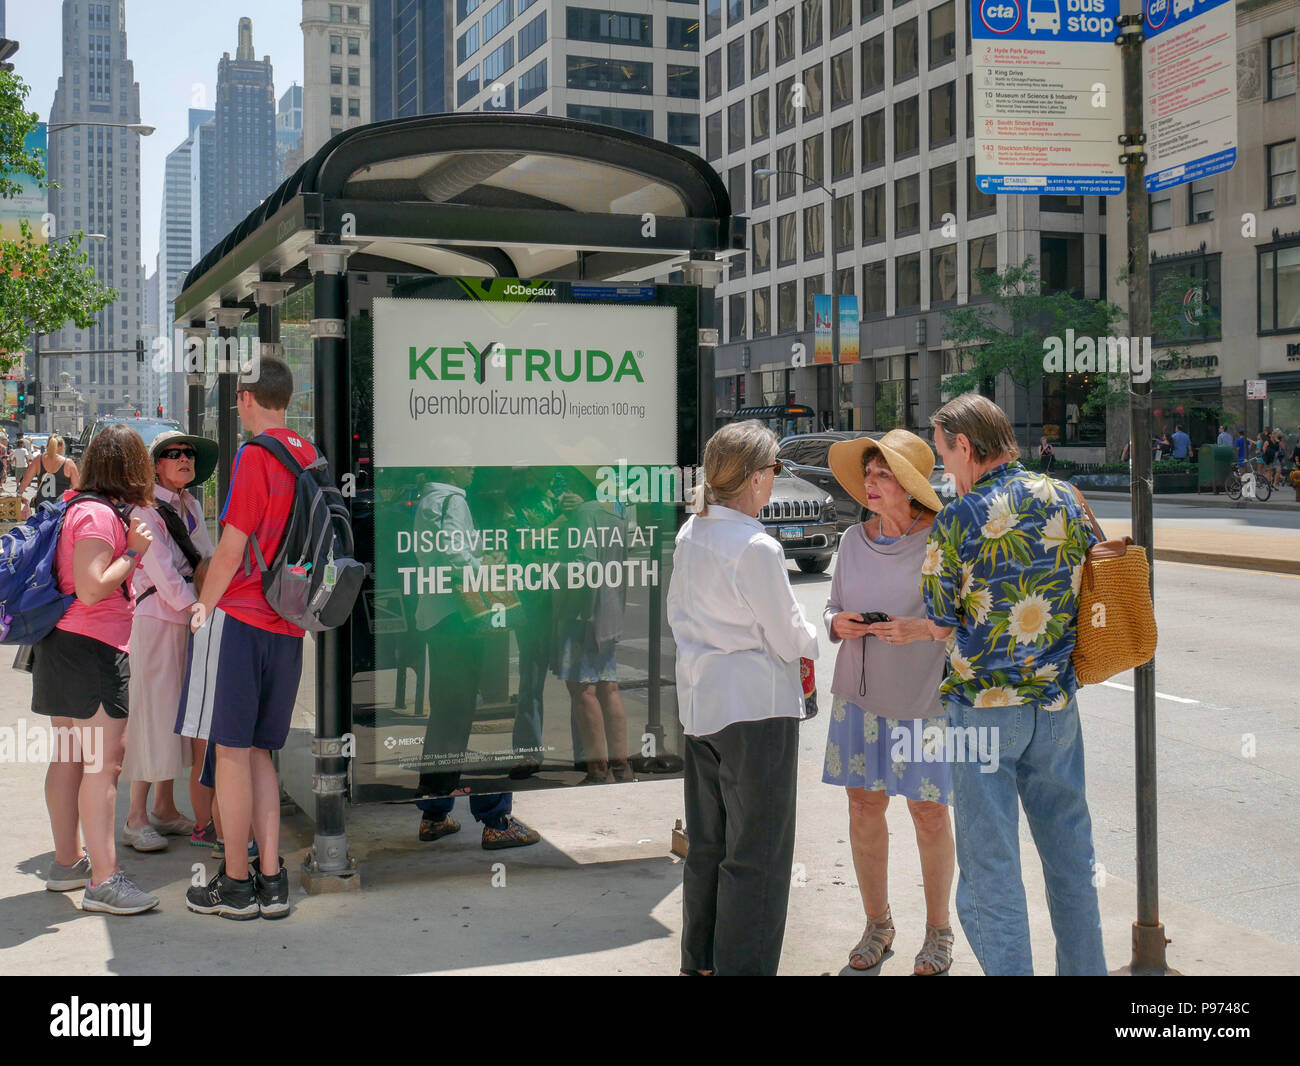 Bushaltestelle mit Werbung für Keytruda, einem monoklonalen Antikörper gegen Krebs Medikament. Stockfoto